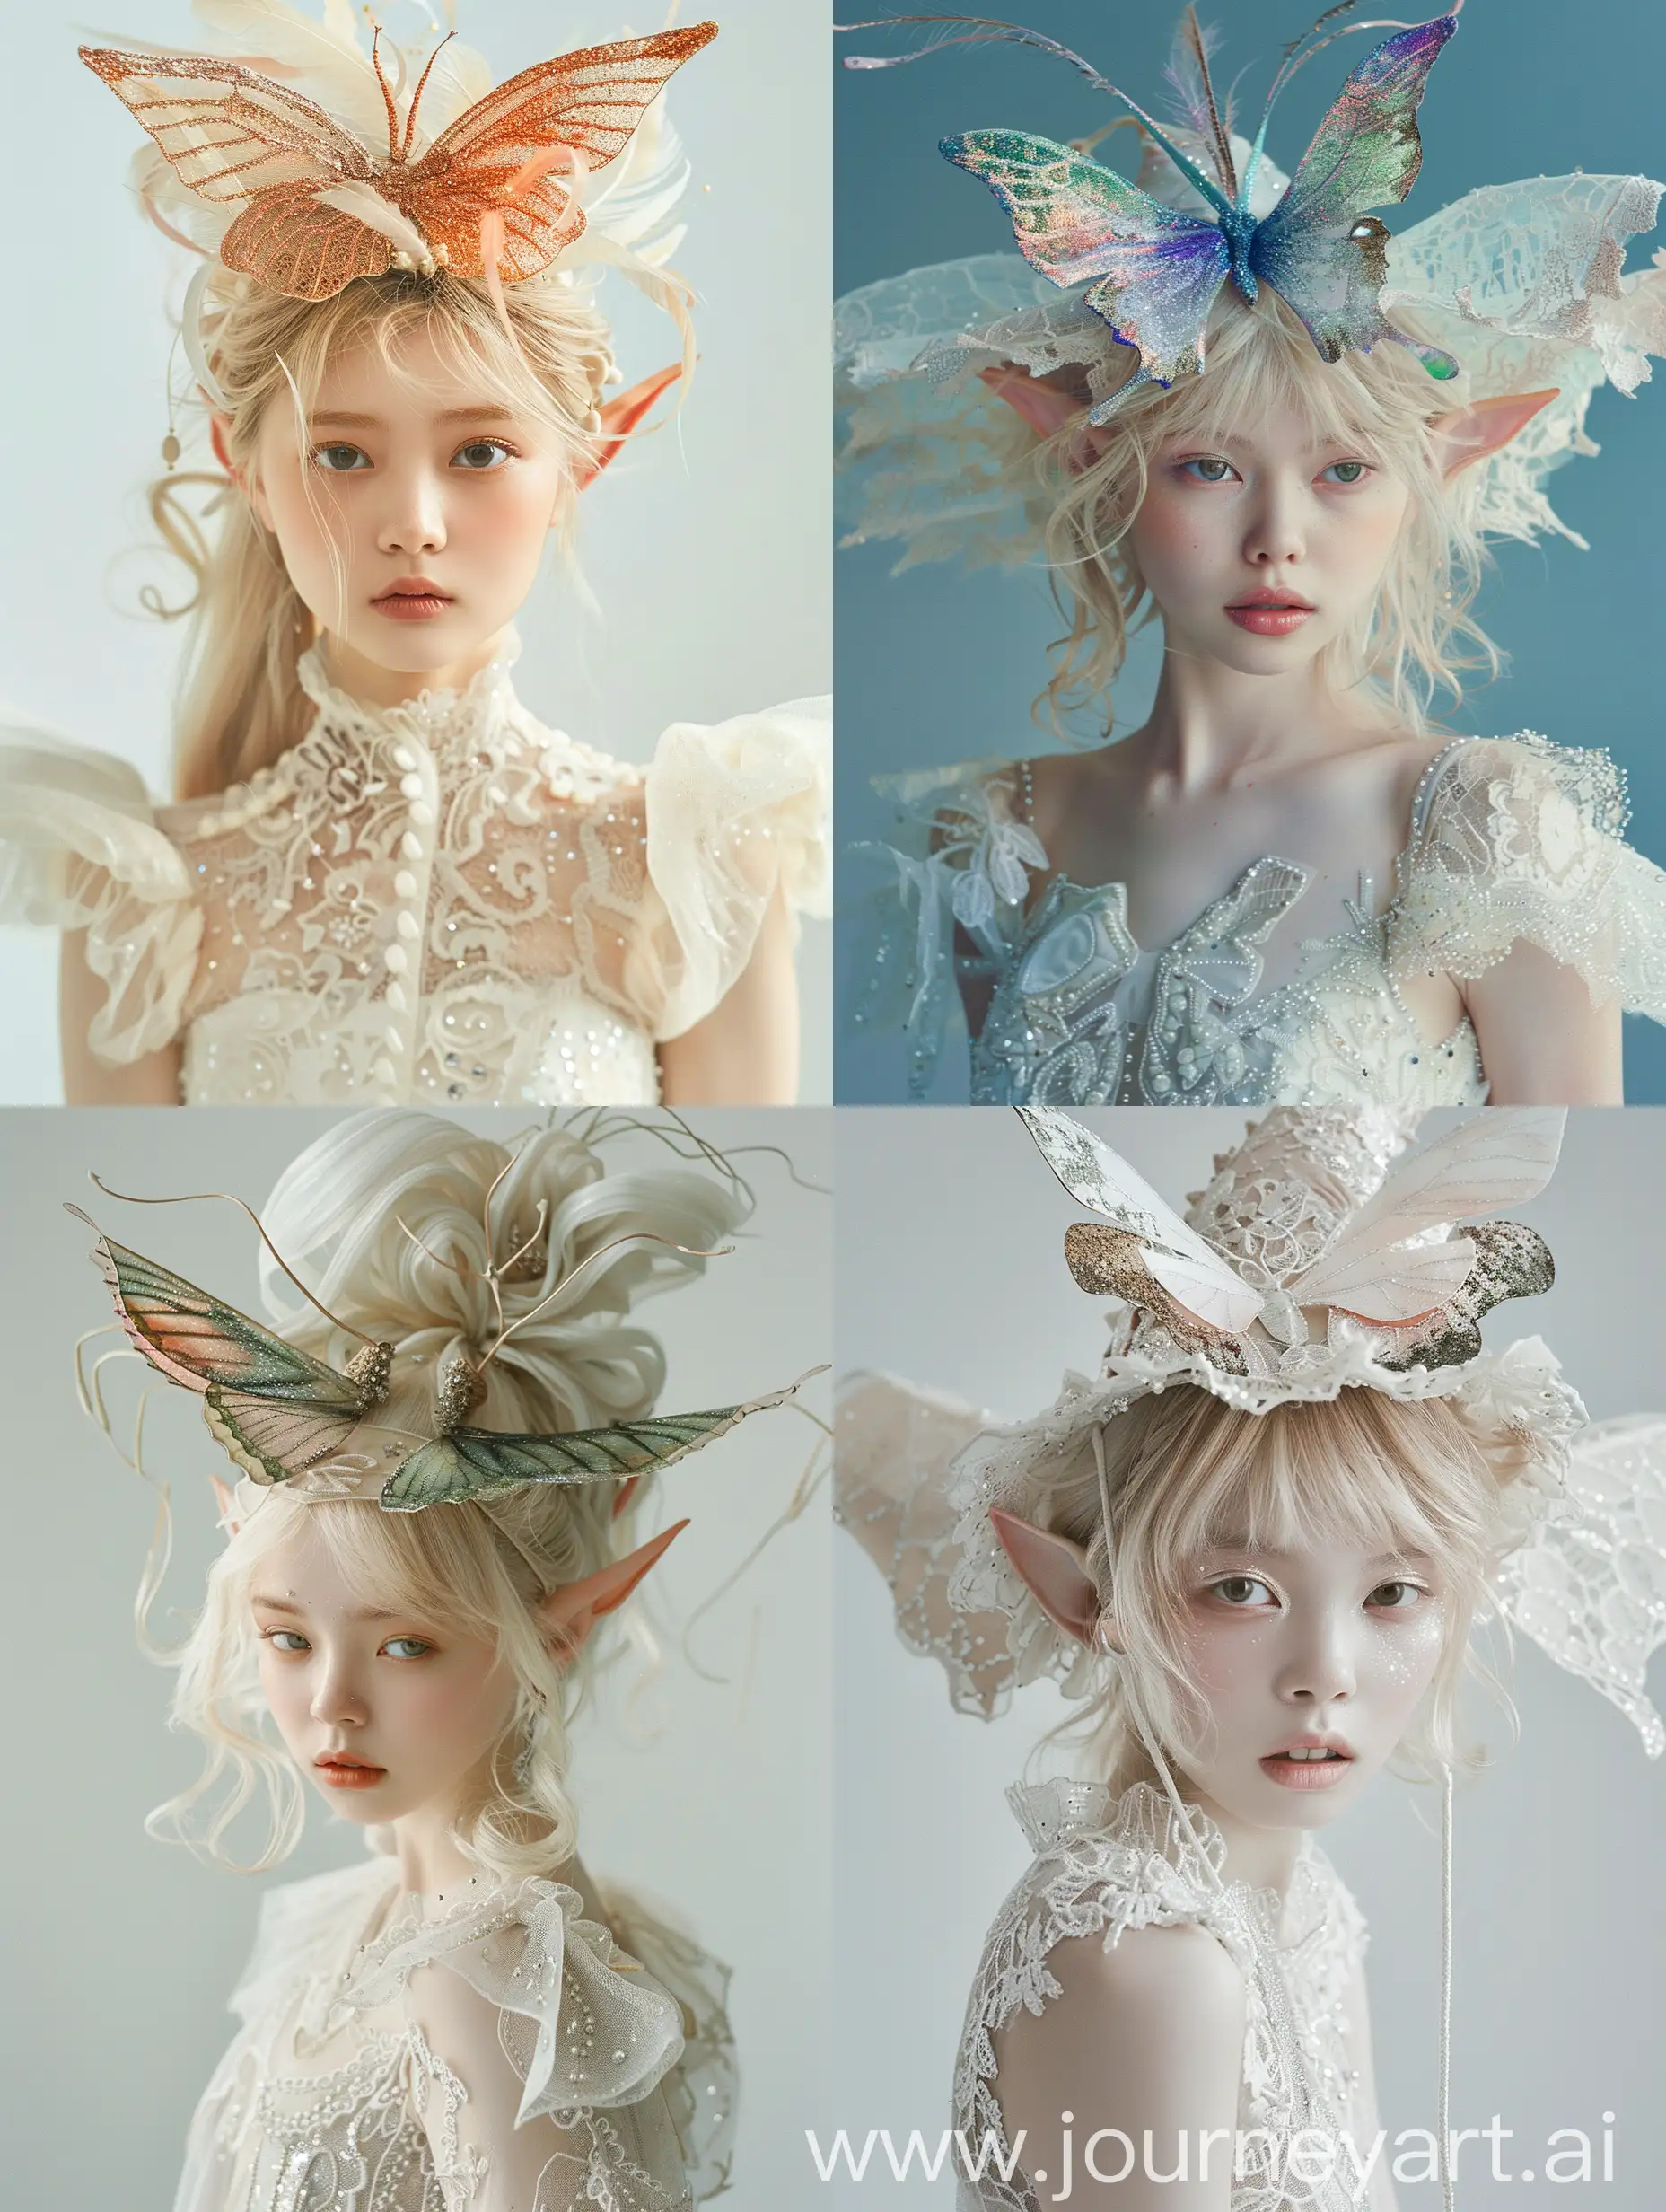 Фото для модного журнала

Красивая японская модель блондинка в образе эльфийки. Шляпа в виде мухамора. Белое платье из кружева с блёстками.

Красивое лицо анфас. Средний план сказка. 